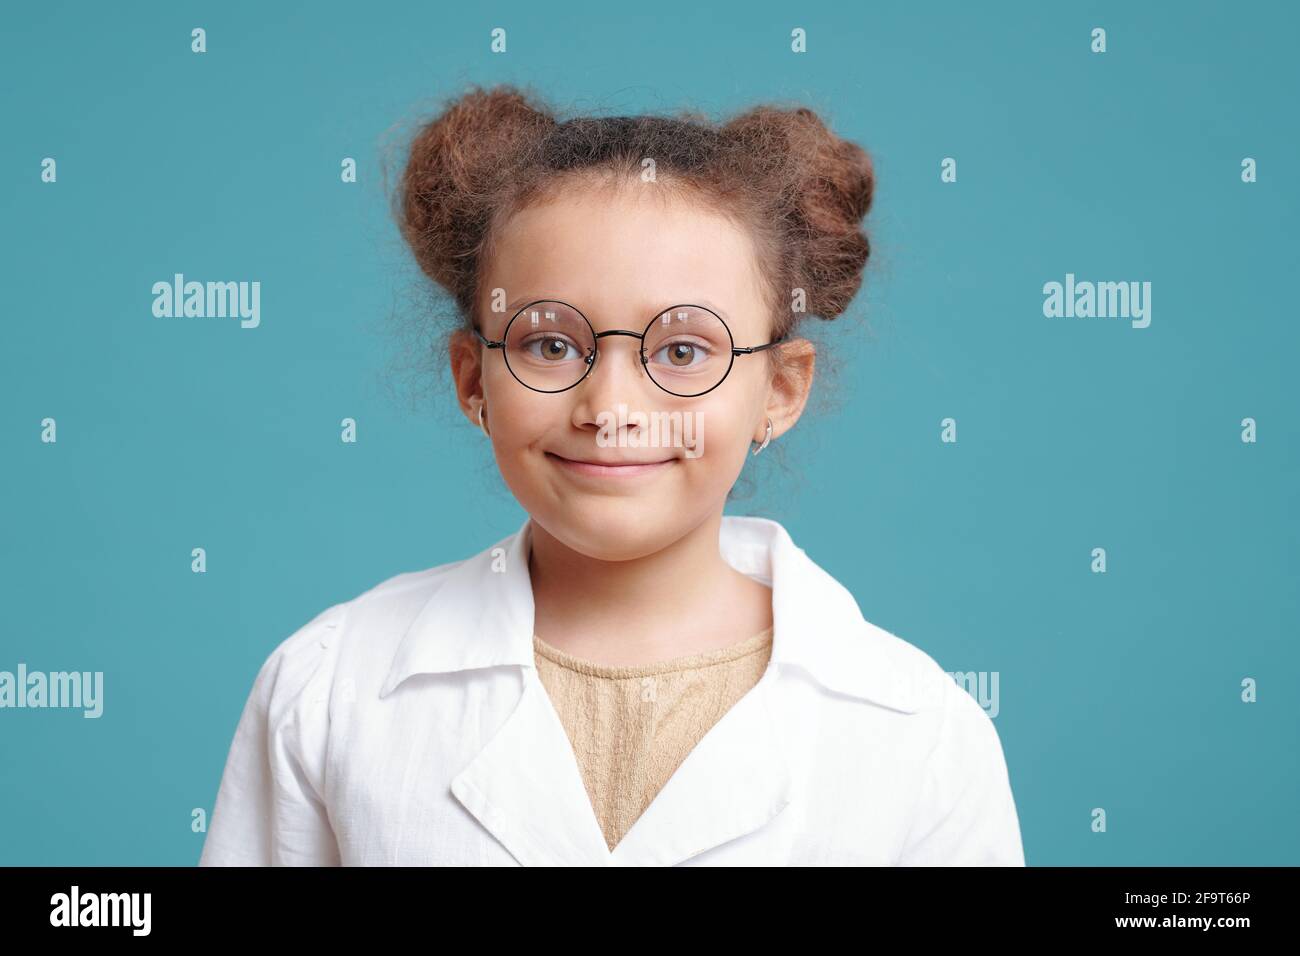 Portrait d'une petite fille mignonne en lunettes souriant à l'appareil photo sur fond bleu Banque D'Images